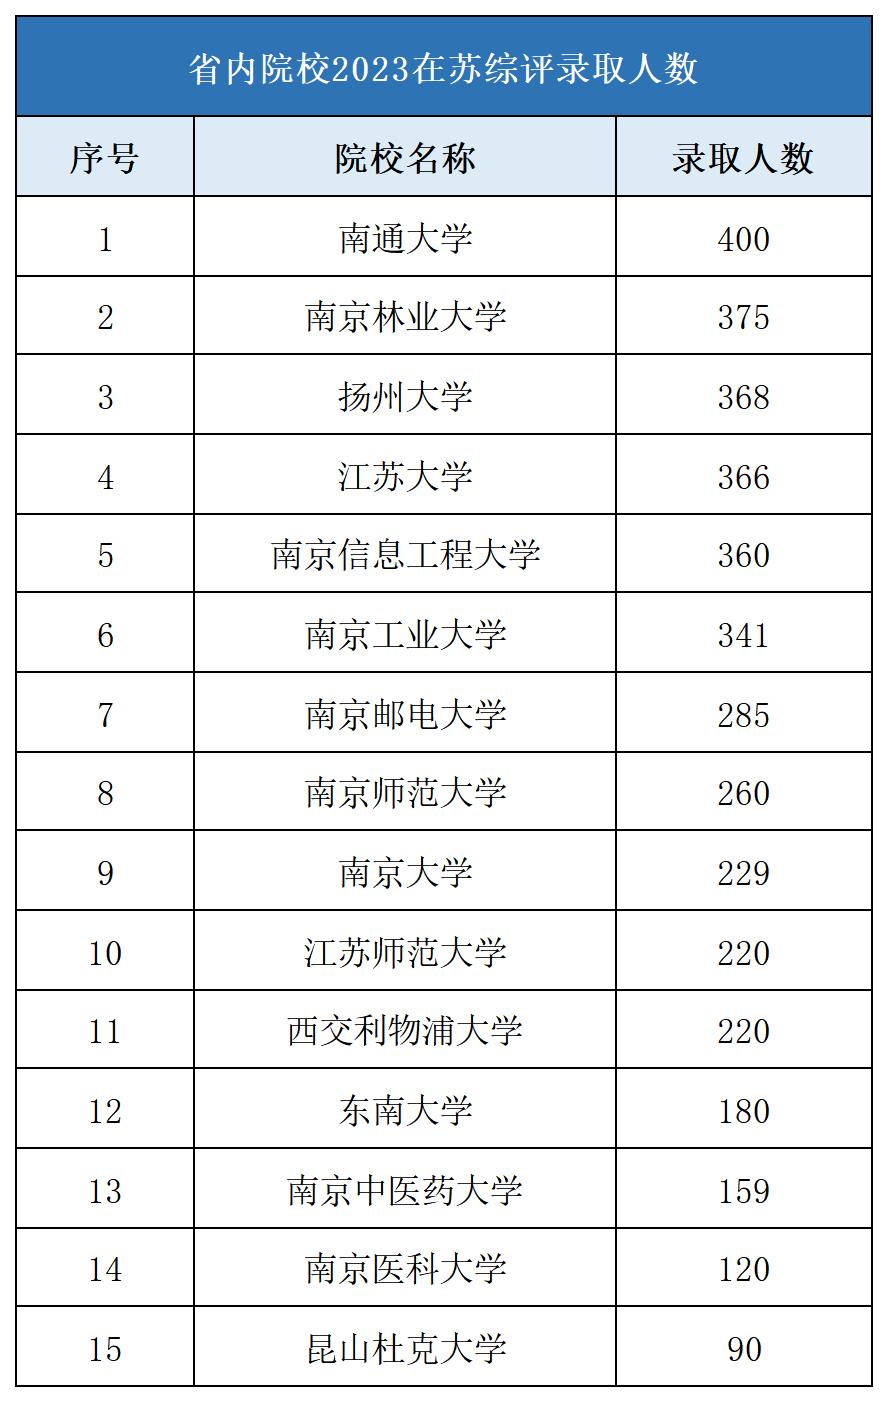 江苏省内院校2023在江苏综评录取人数